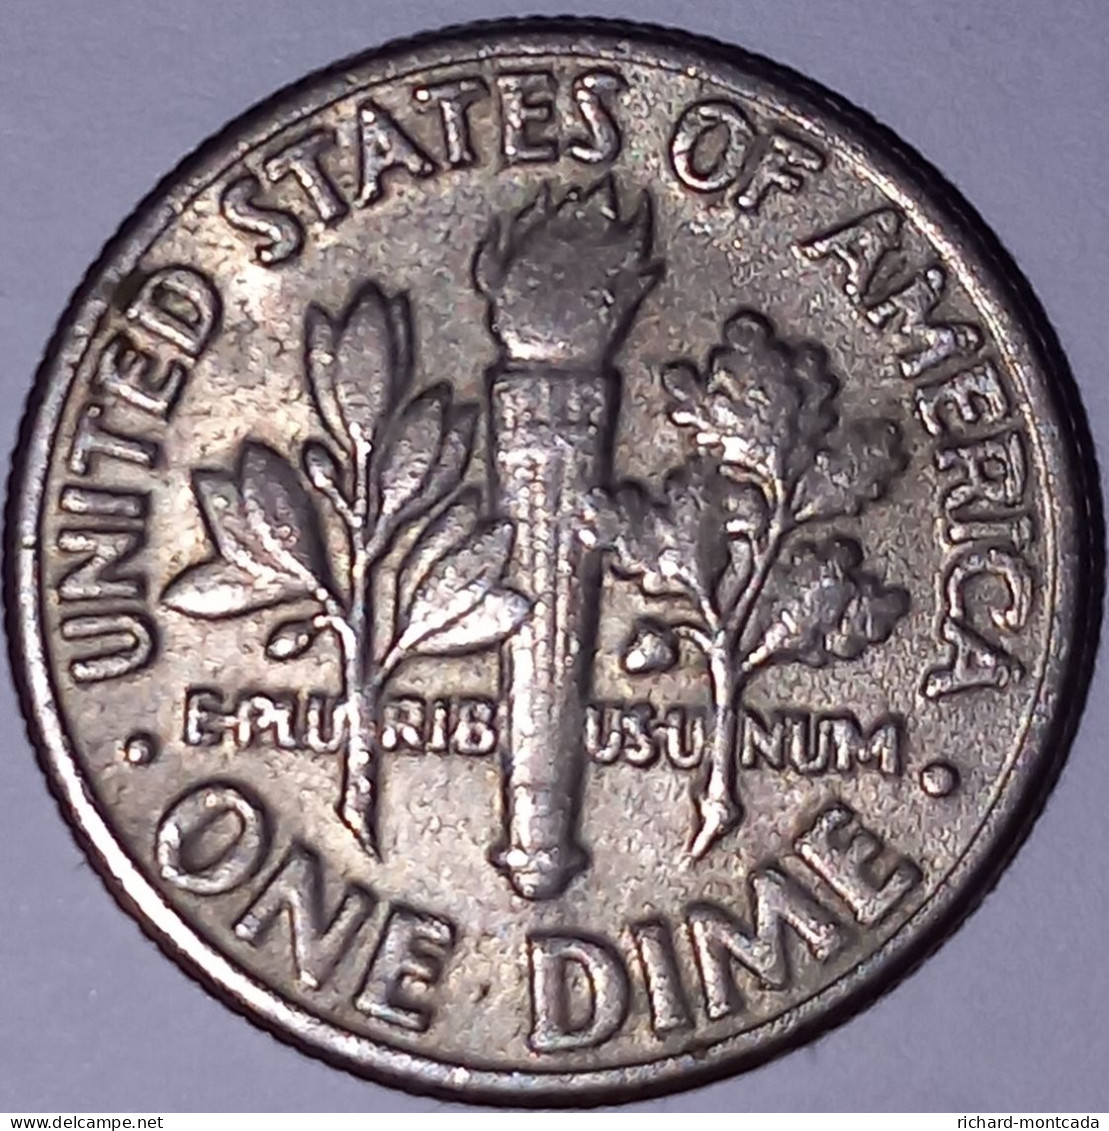 4 Monedas de Plata EEUU de 1928 a 1983